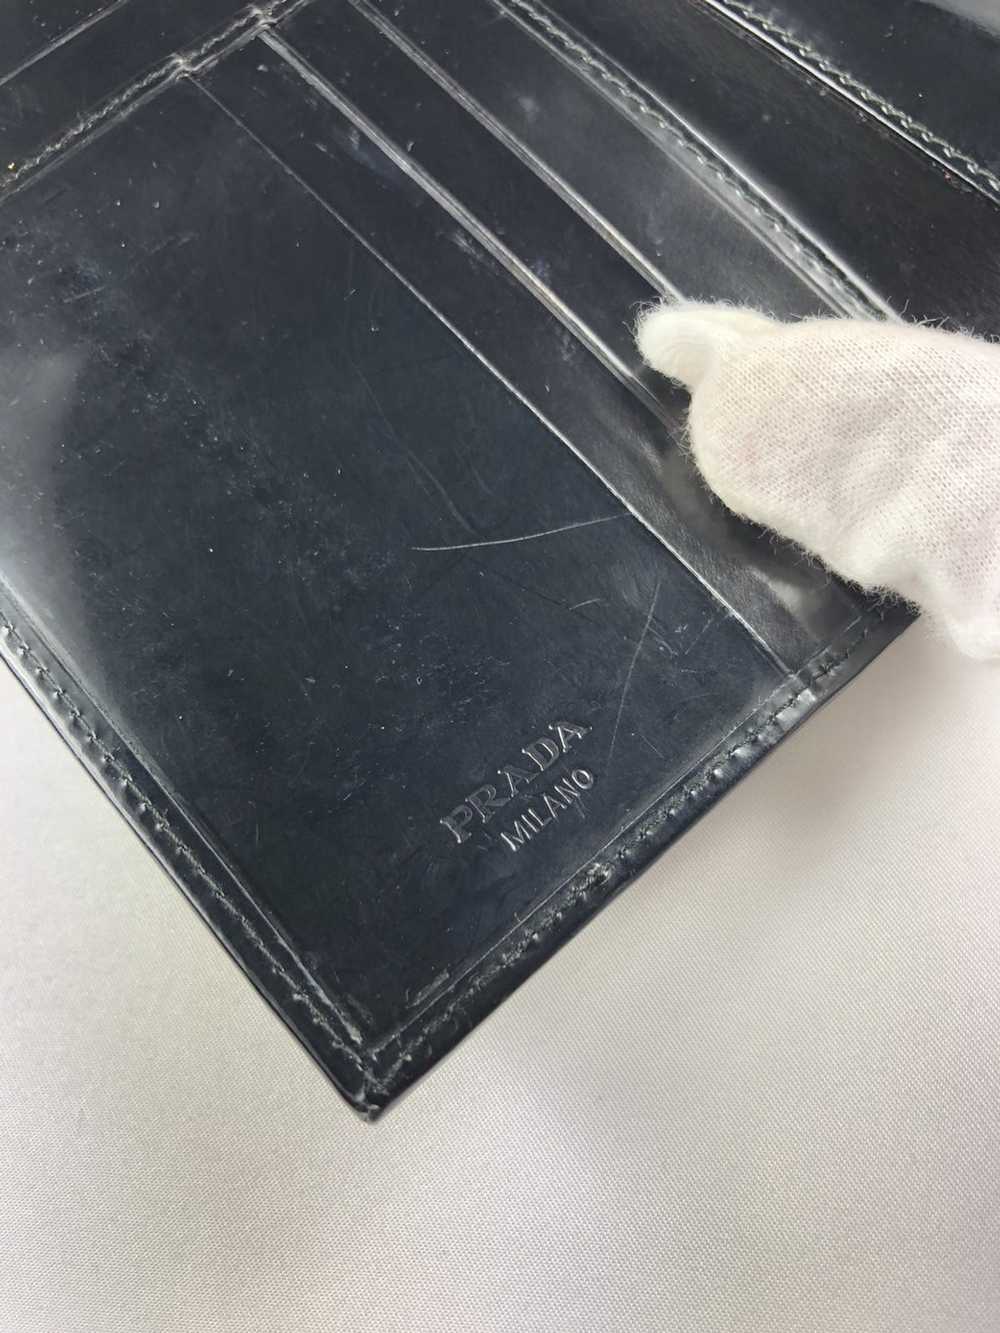 Prada Prada milano black leather trifold wallet - image 4